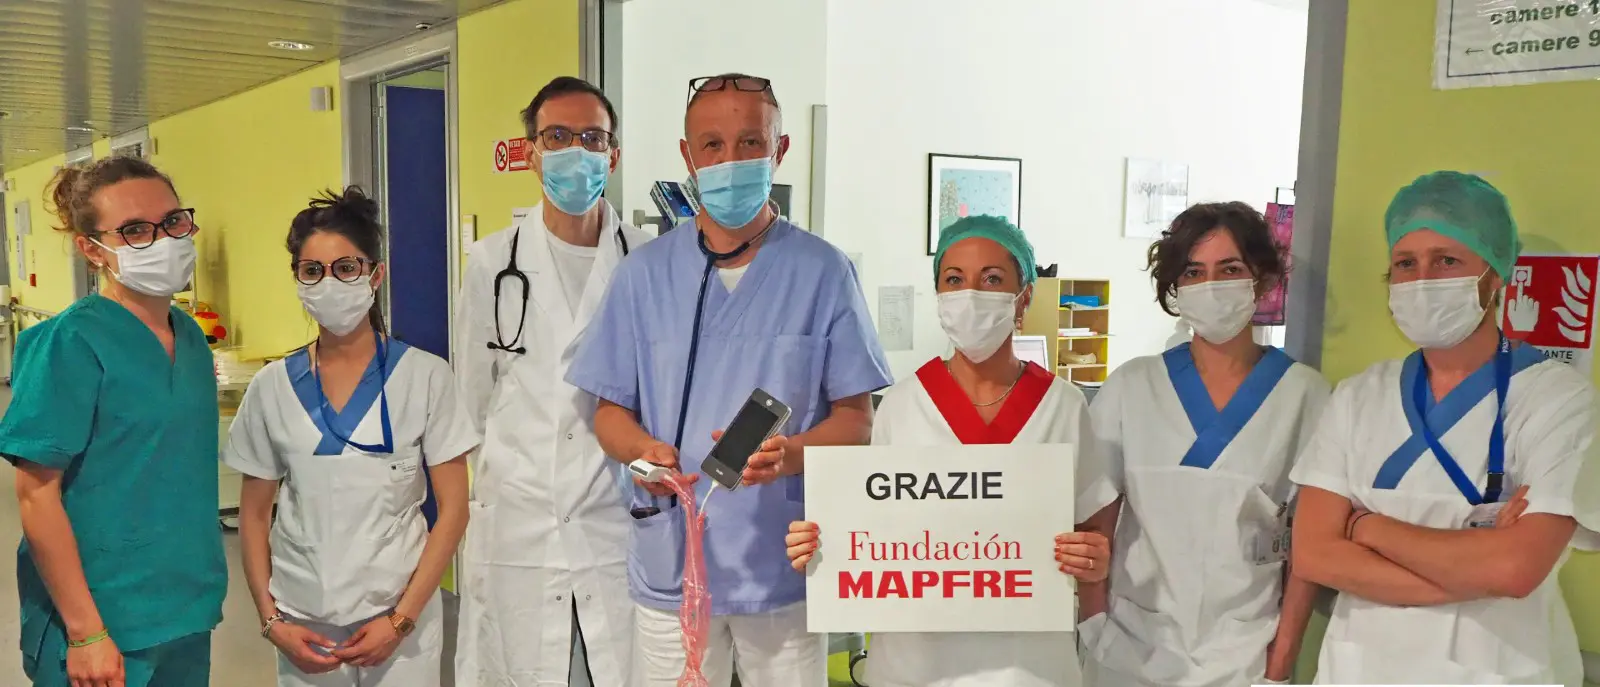 El sector sanitario italiano apoyado por Verti, gracias a Fundación MAPFRE